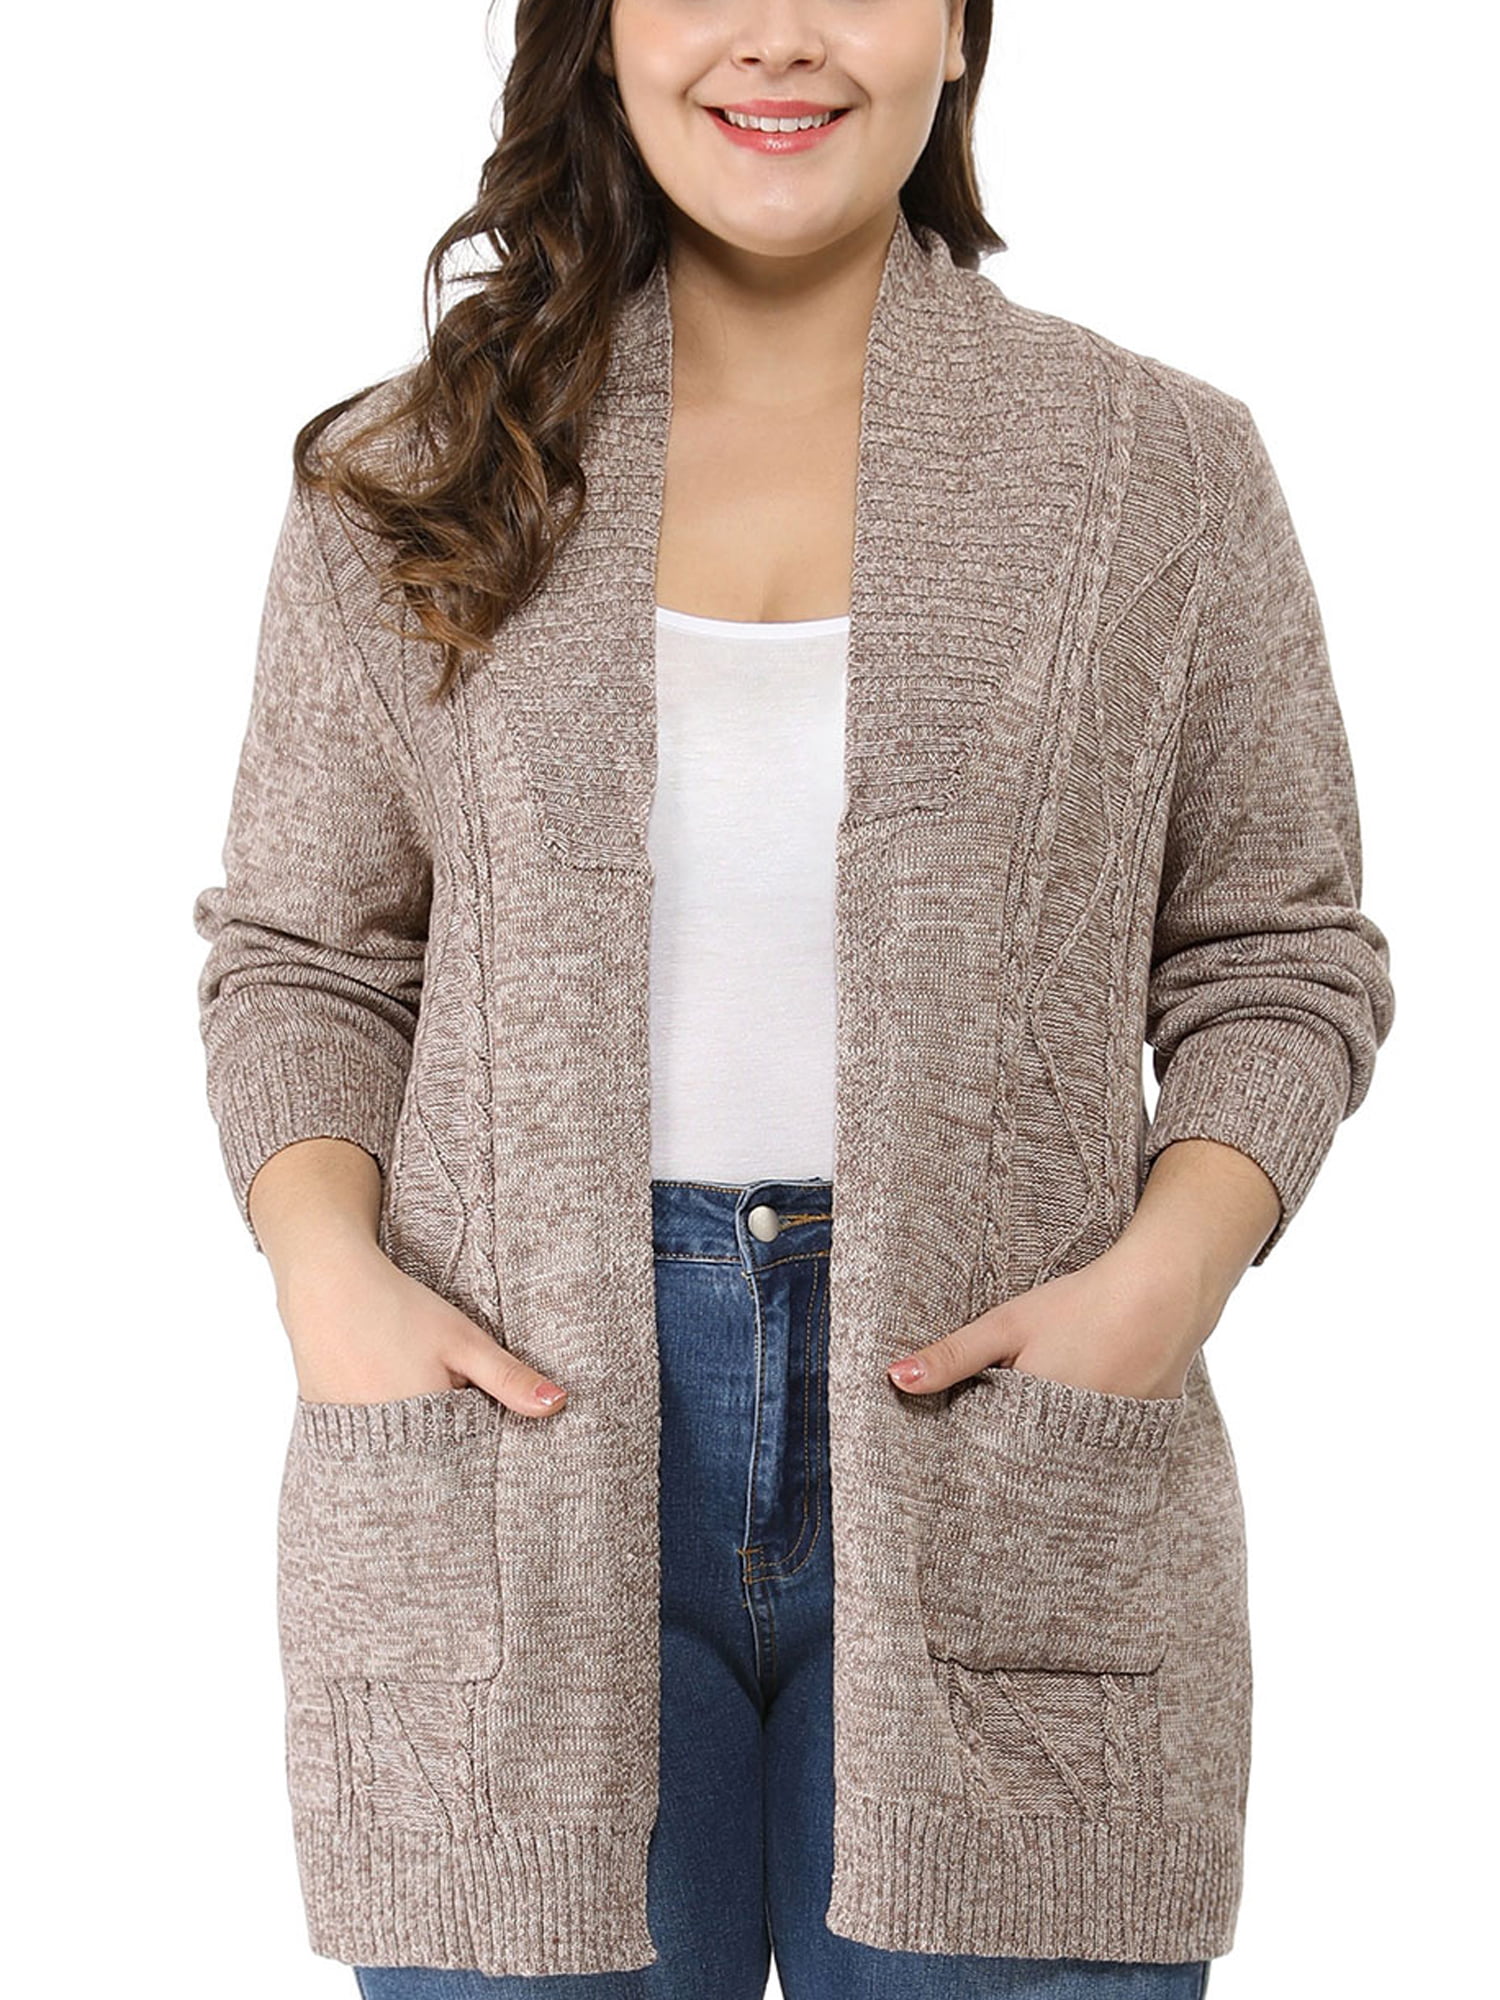 Unique Bargains - Women's Plus Size Two Pockets Open Front Sweater ...